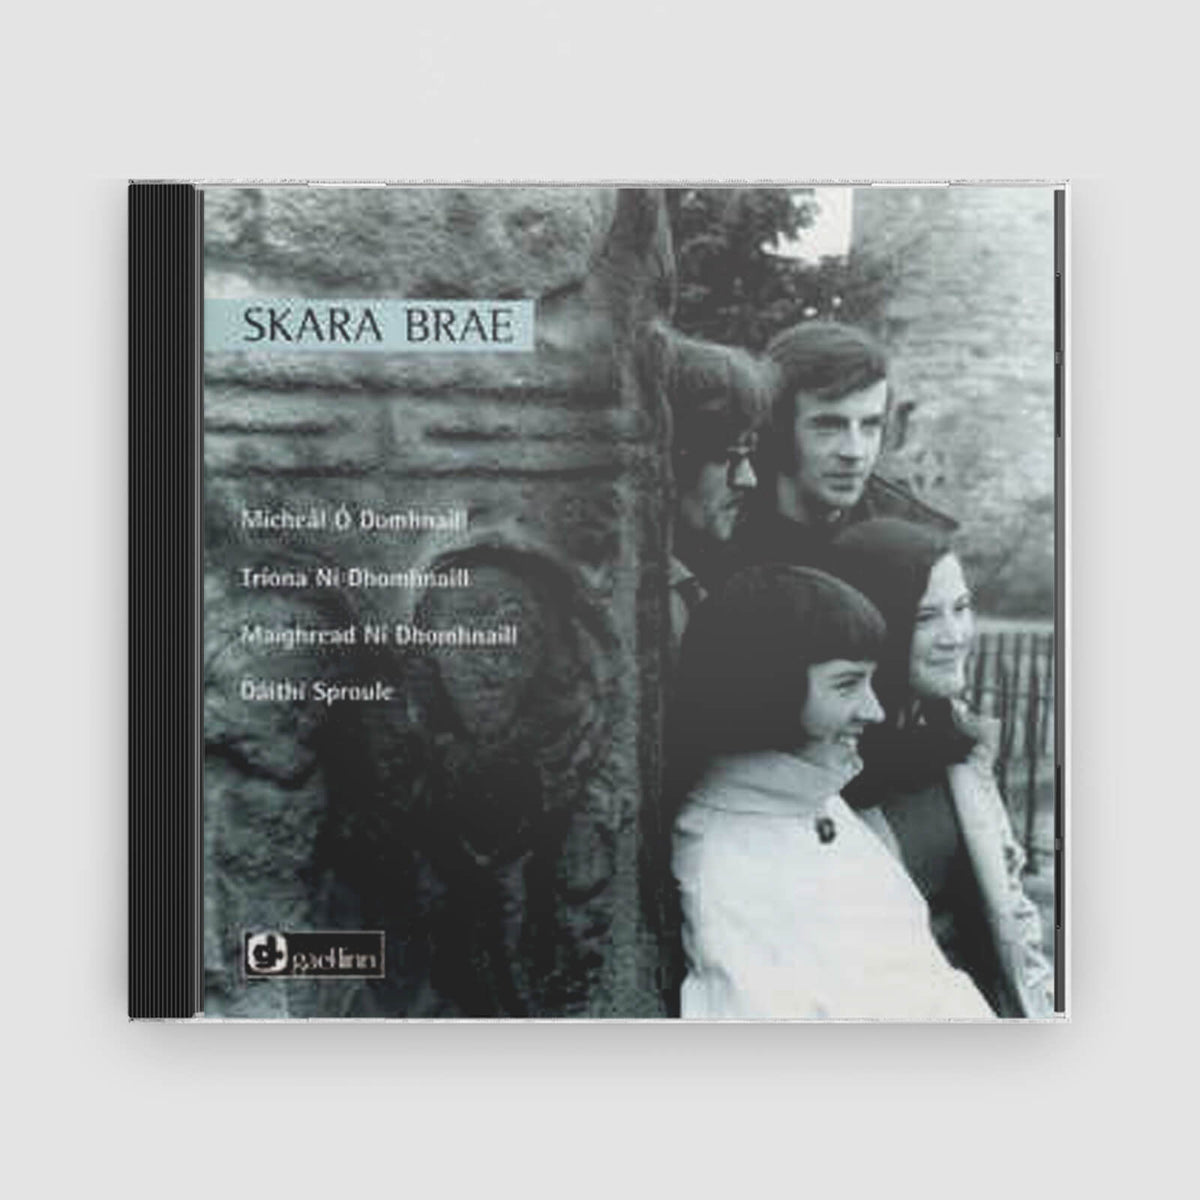 Skara Brae’s Famous Album : Skara Brae